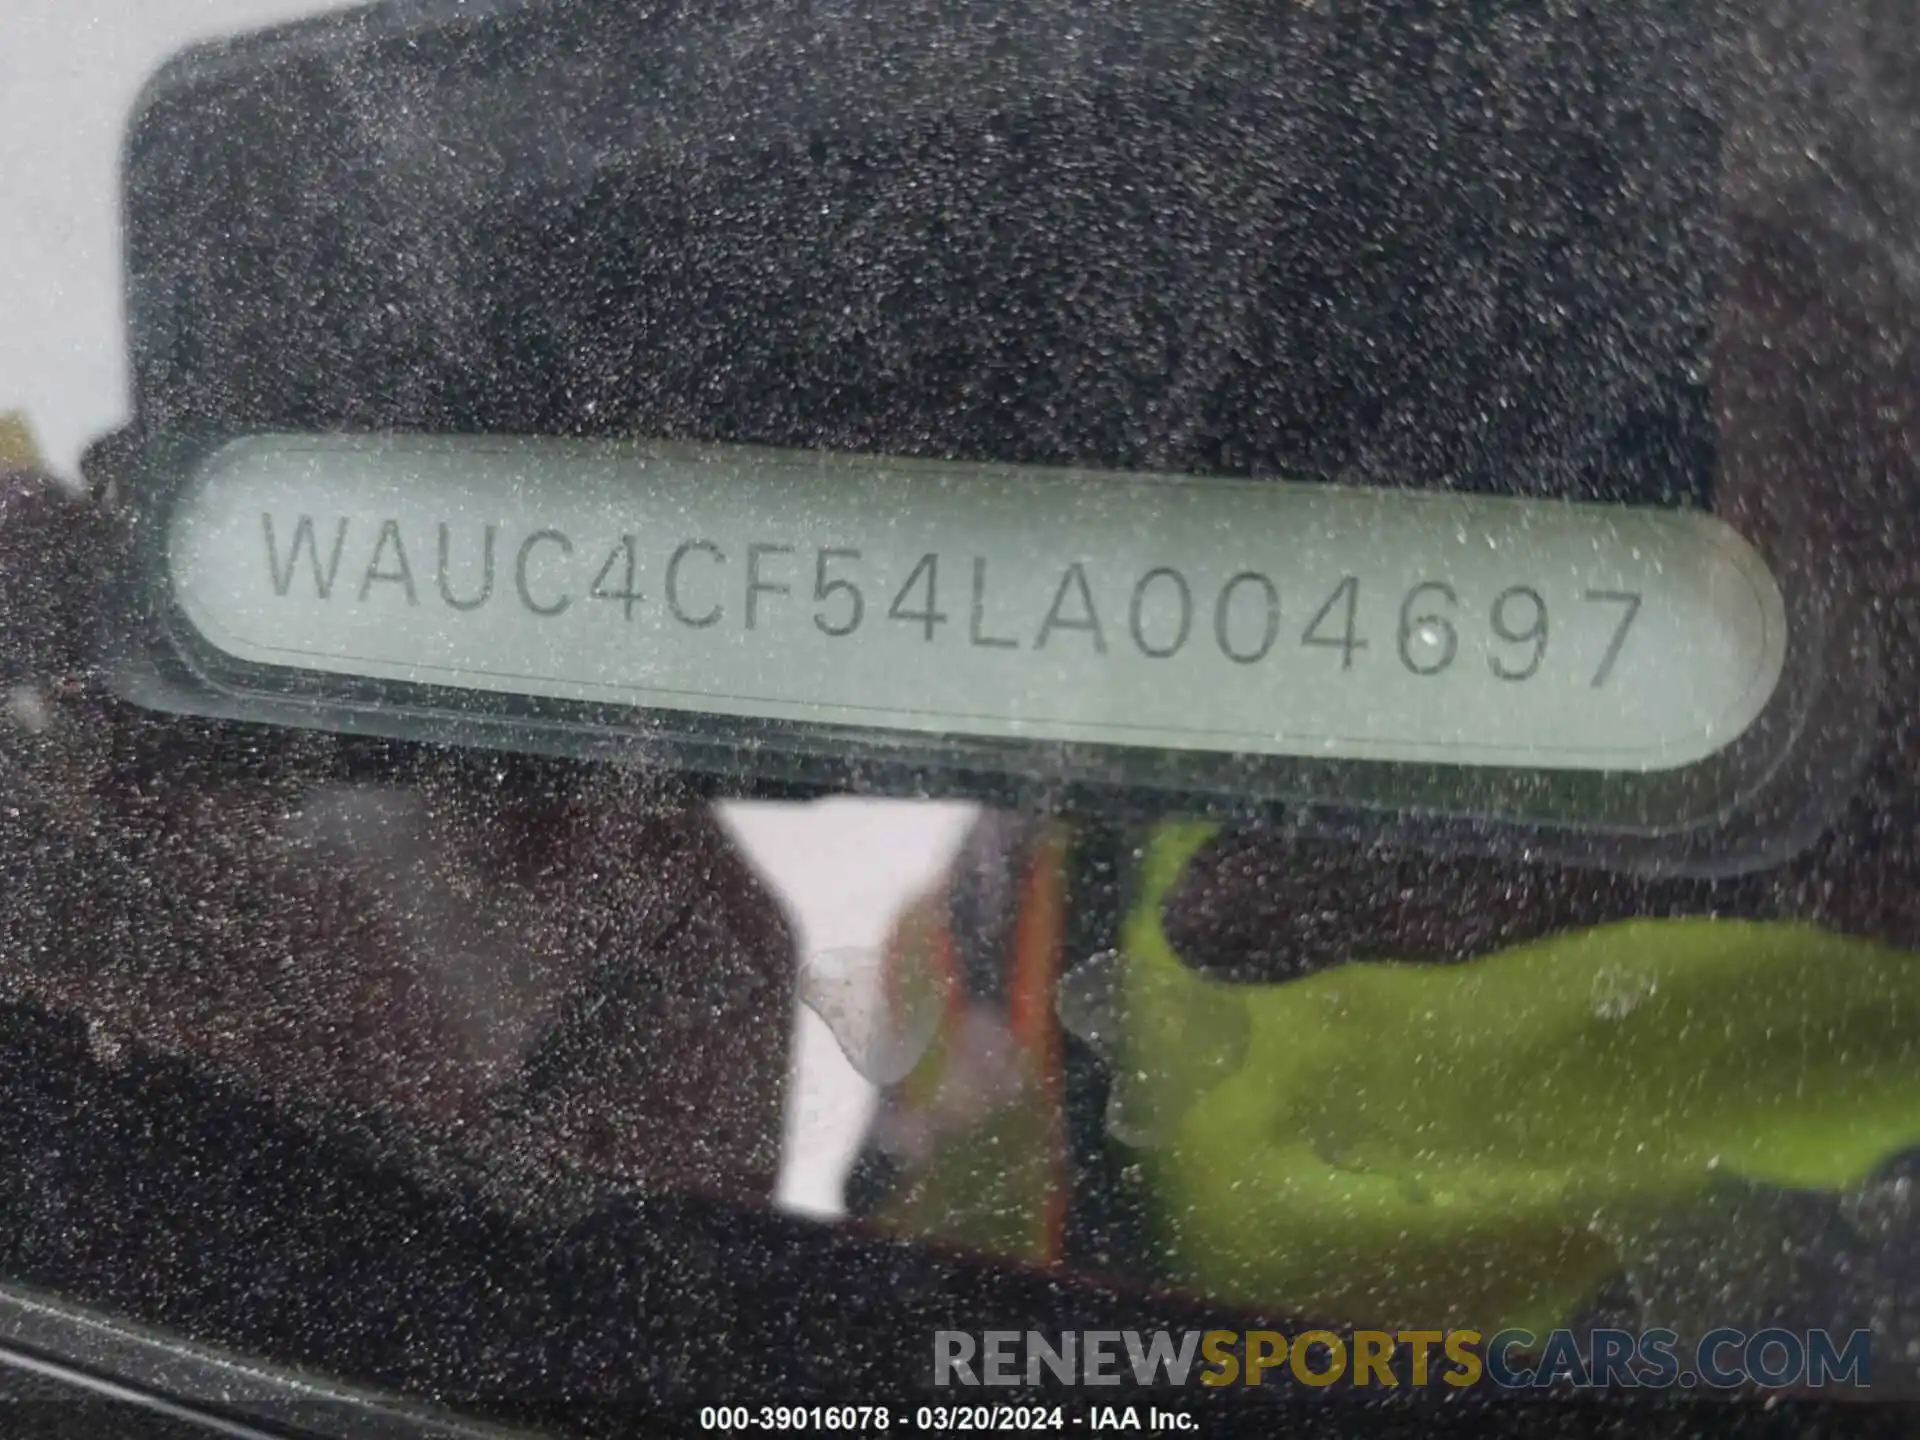 9 Фотография поврежденного автомобиля WAUC4CF54LA004697 AUDI S5 SPORTBACK 2020